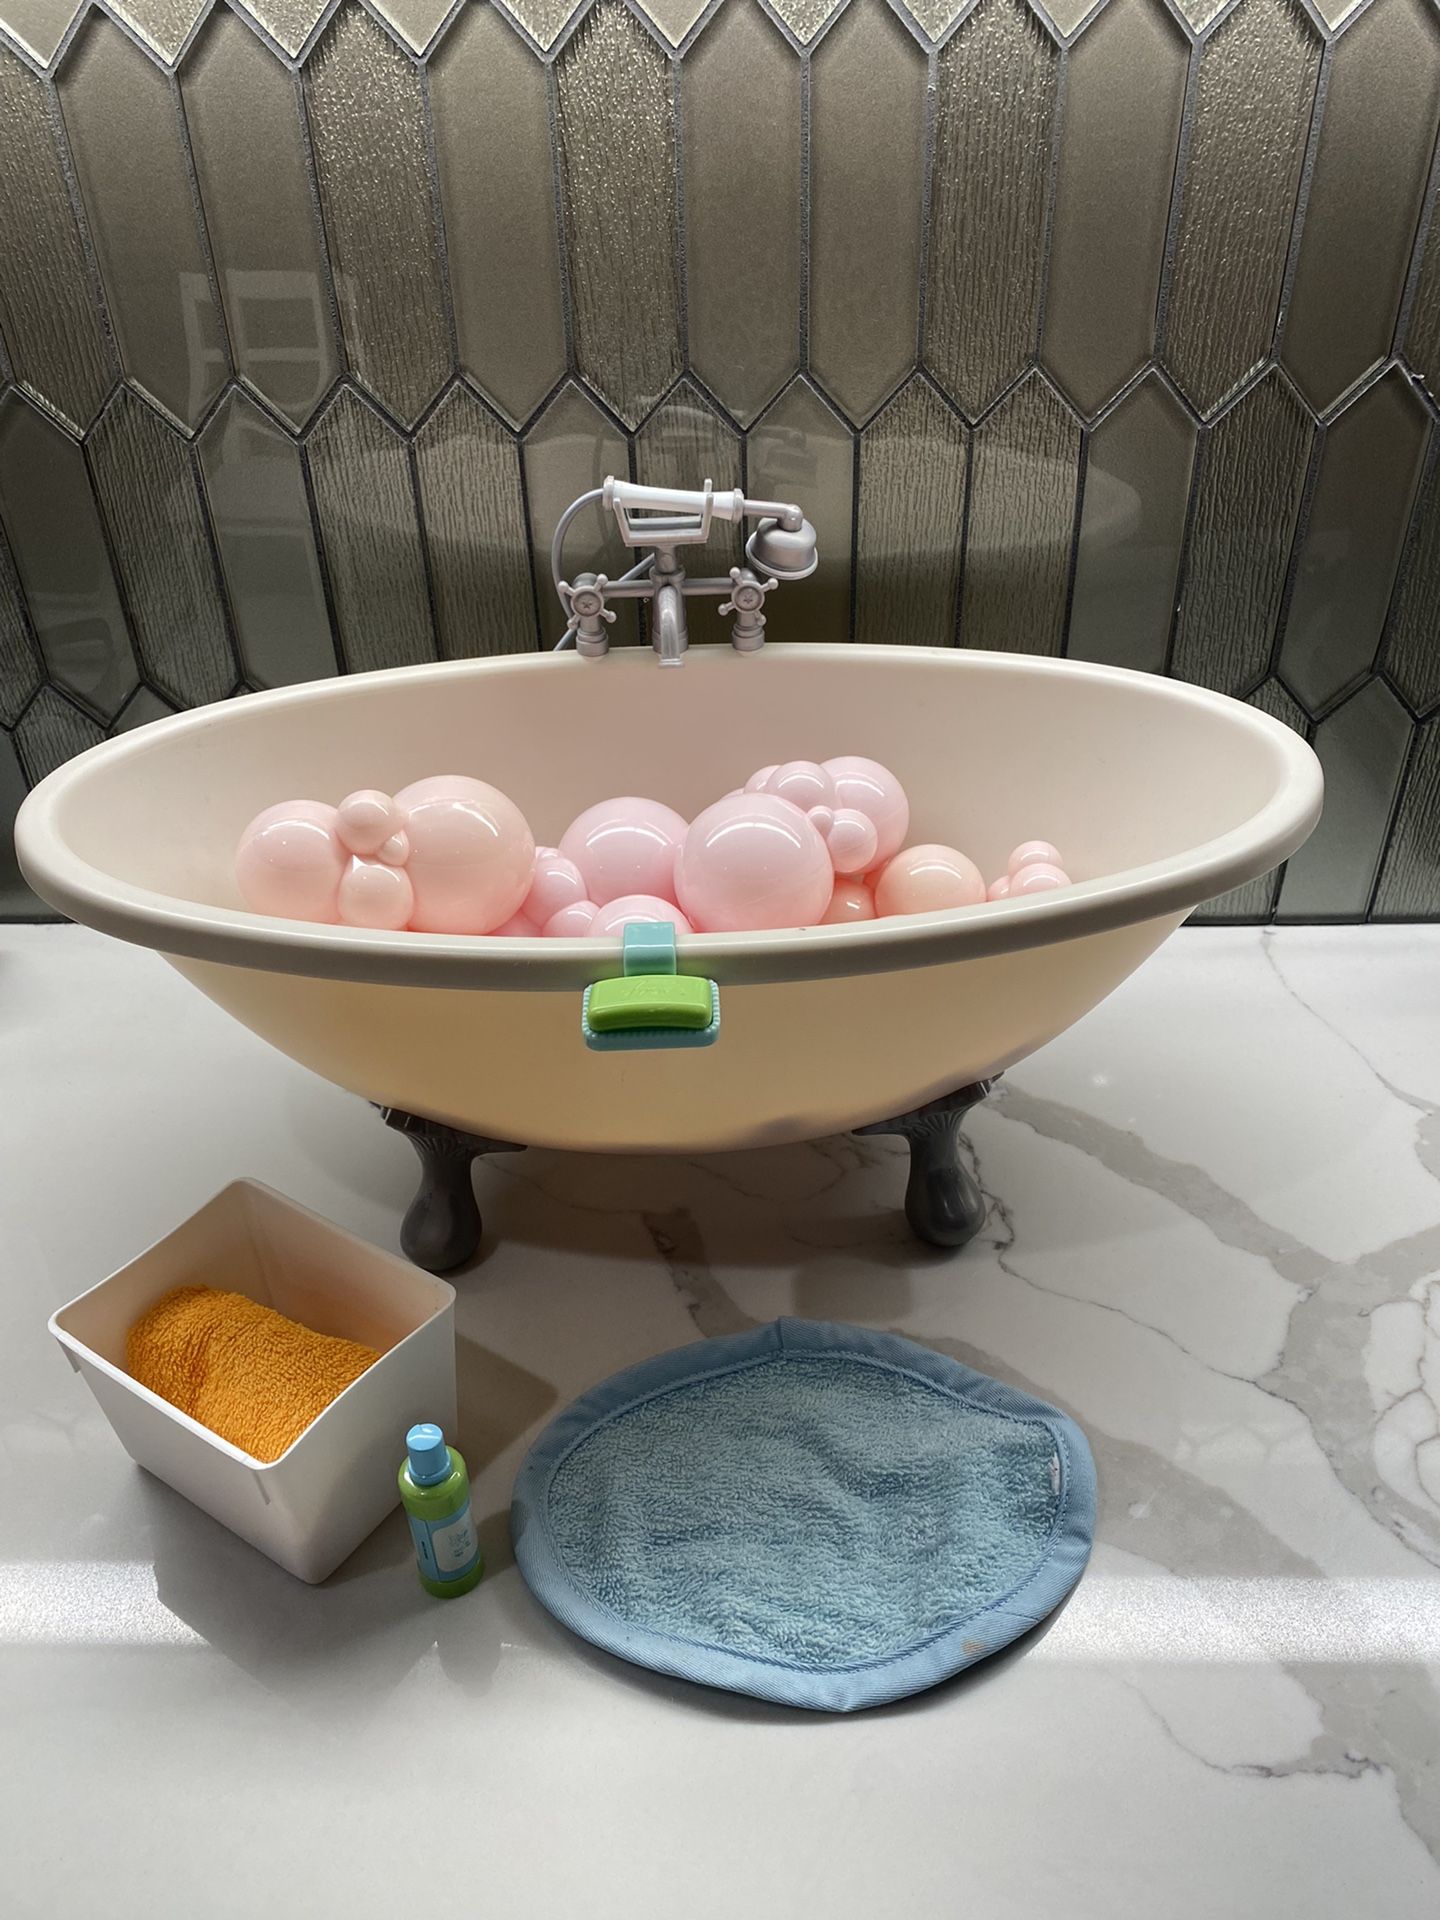 American Girl bath Tub Set